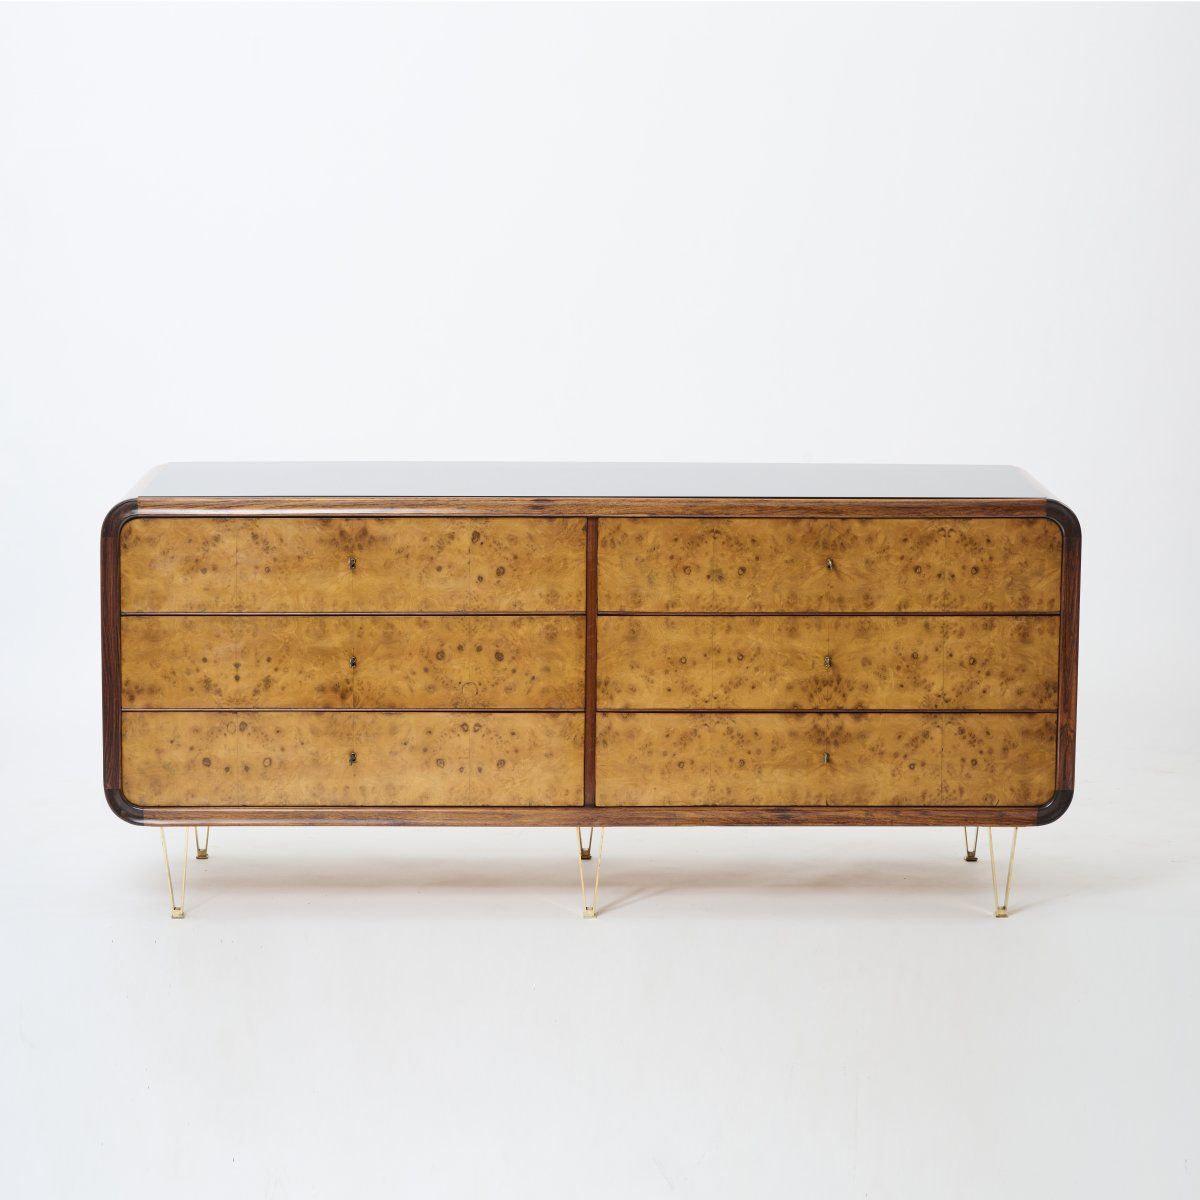 Italien 抽屉柜/餐具柜，1950年代。
高88 x 200 x 61厘米。
木箱结构，胡桃木，胡桃木饰面，毛刺木饰面，黄铜，玻璃，黑色。